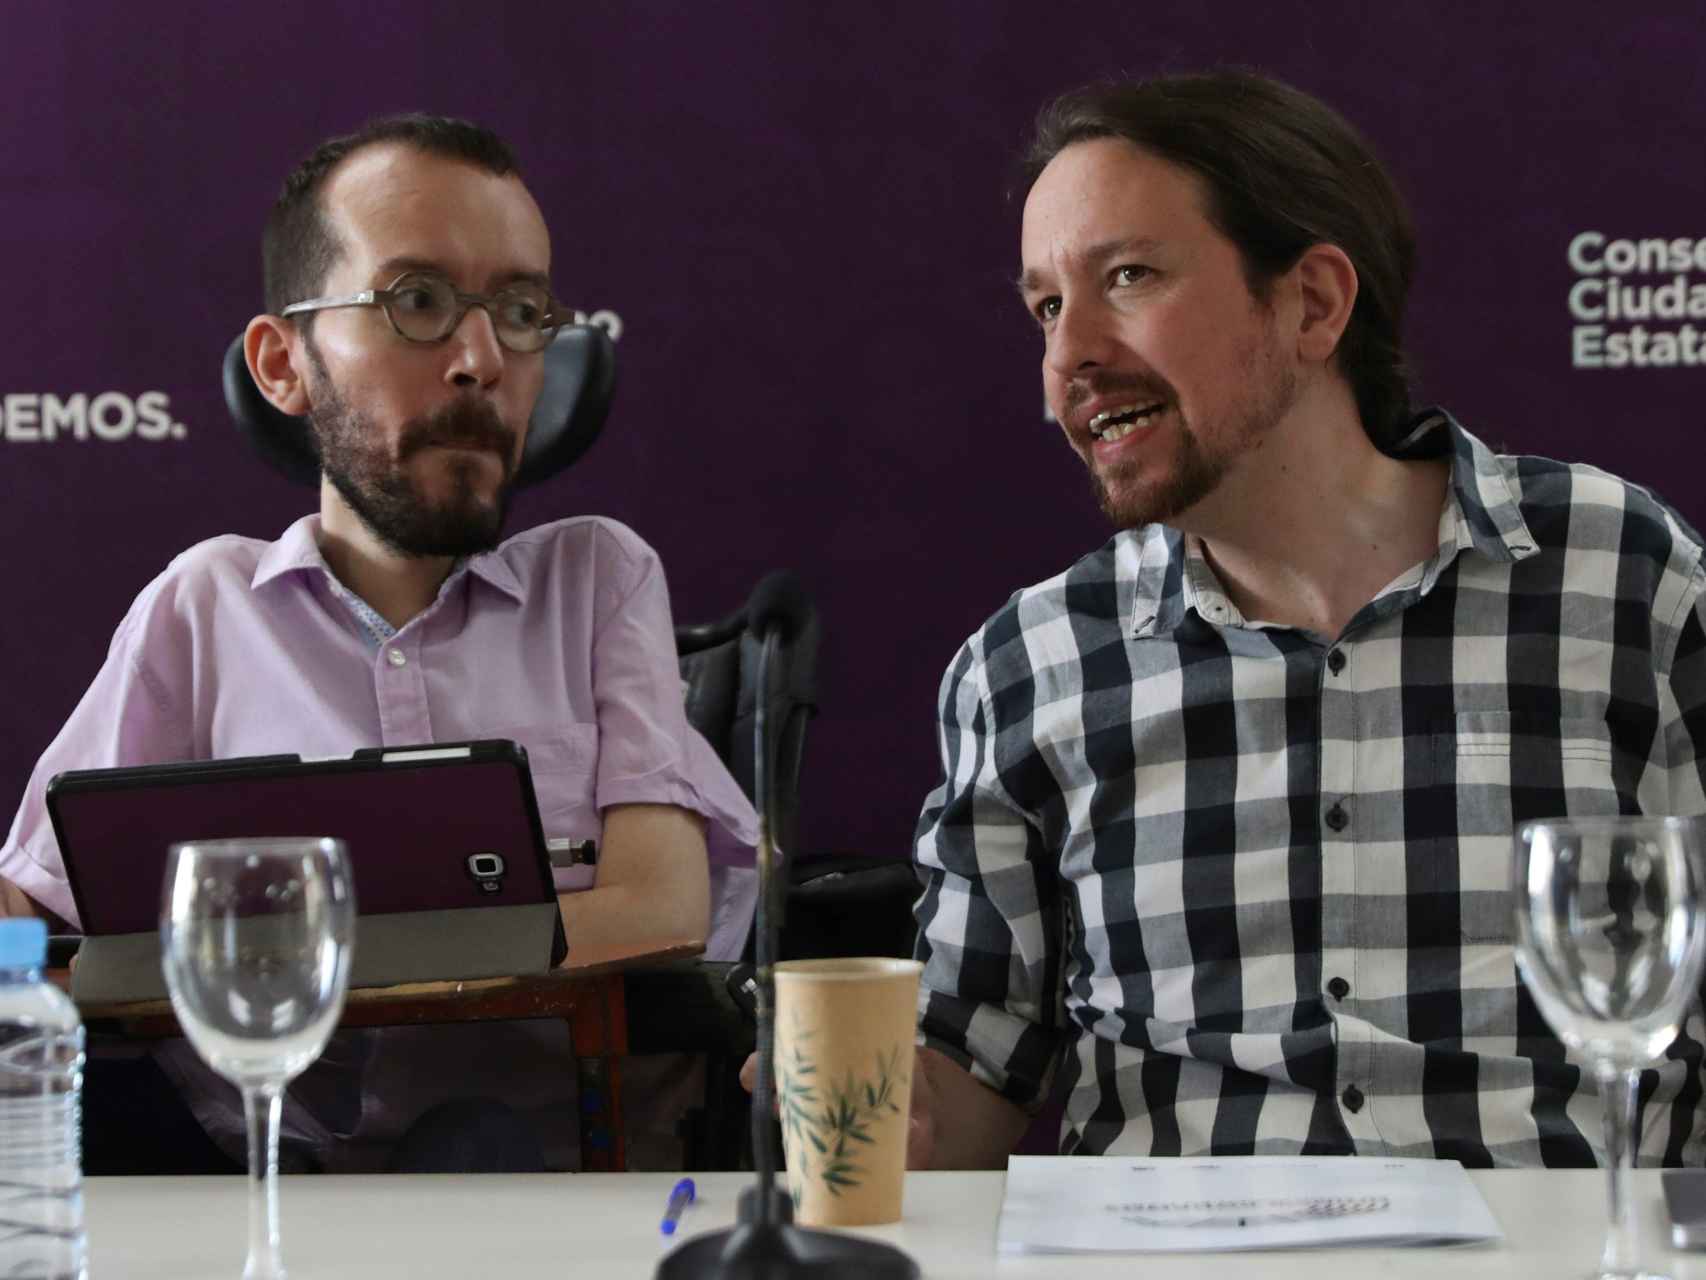 Pablo Echenique y Pablo Iglesias, líderes de Podemos, en el Consejo Ciudadano Estatal (CCE).